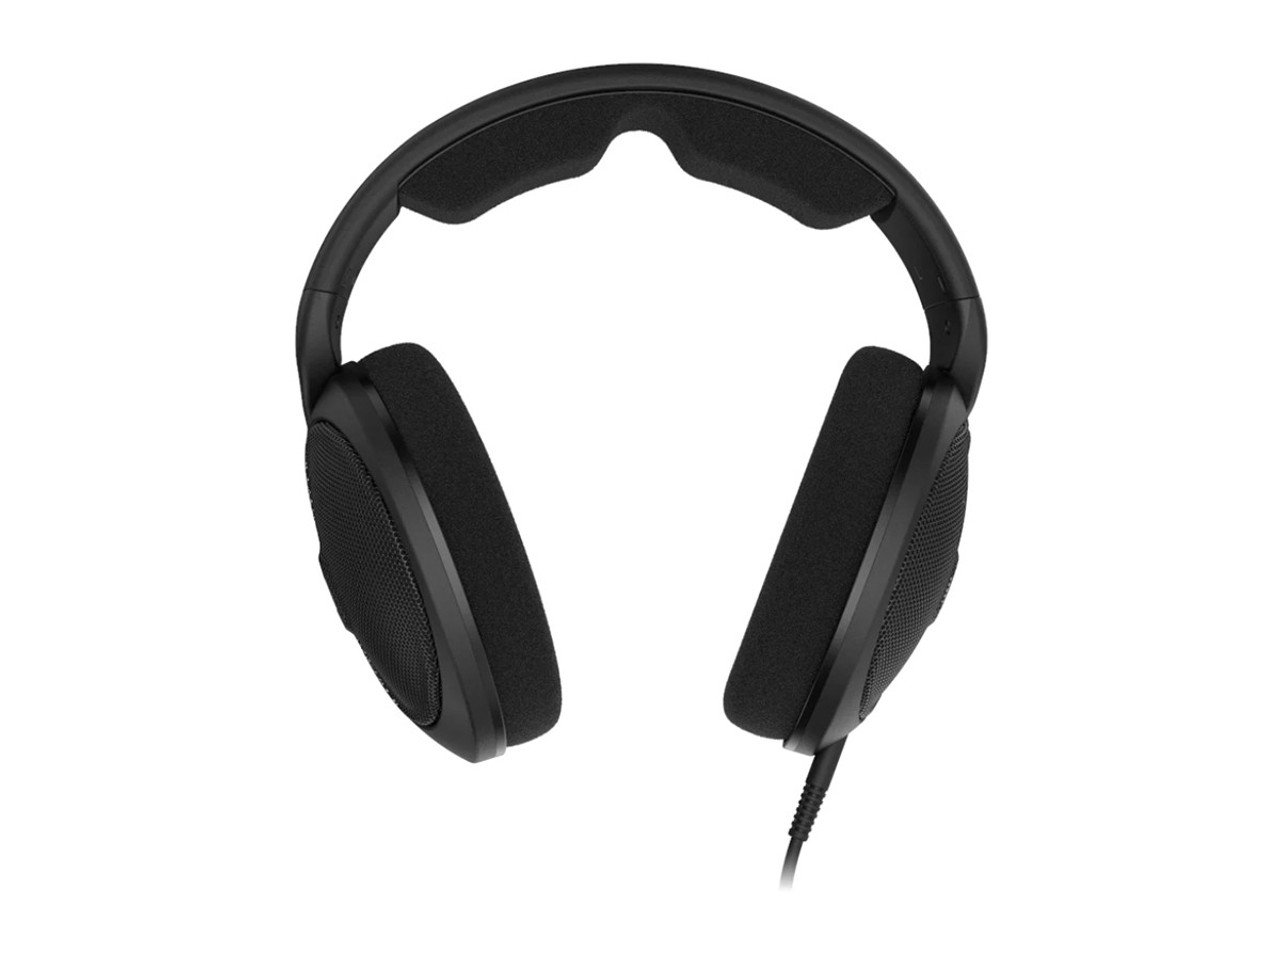 HD 560 S Headphones - Open Box